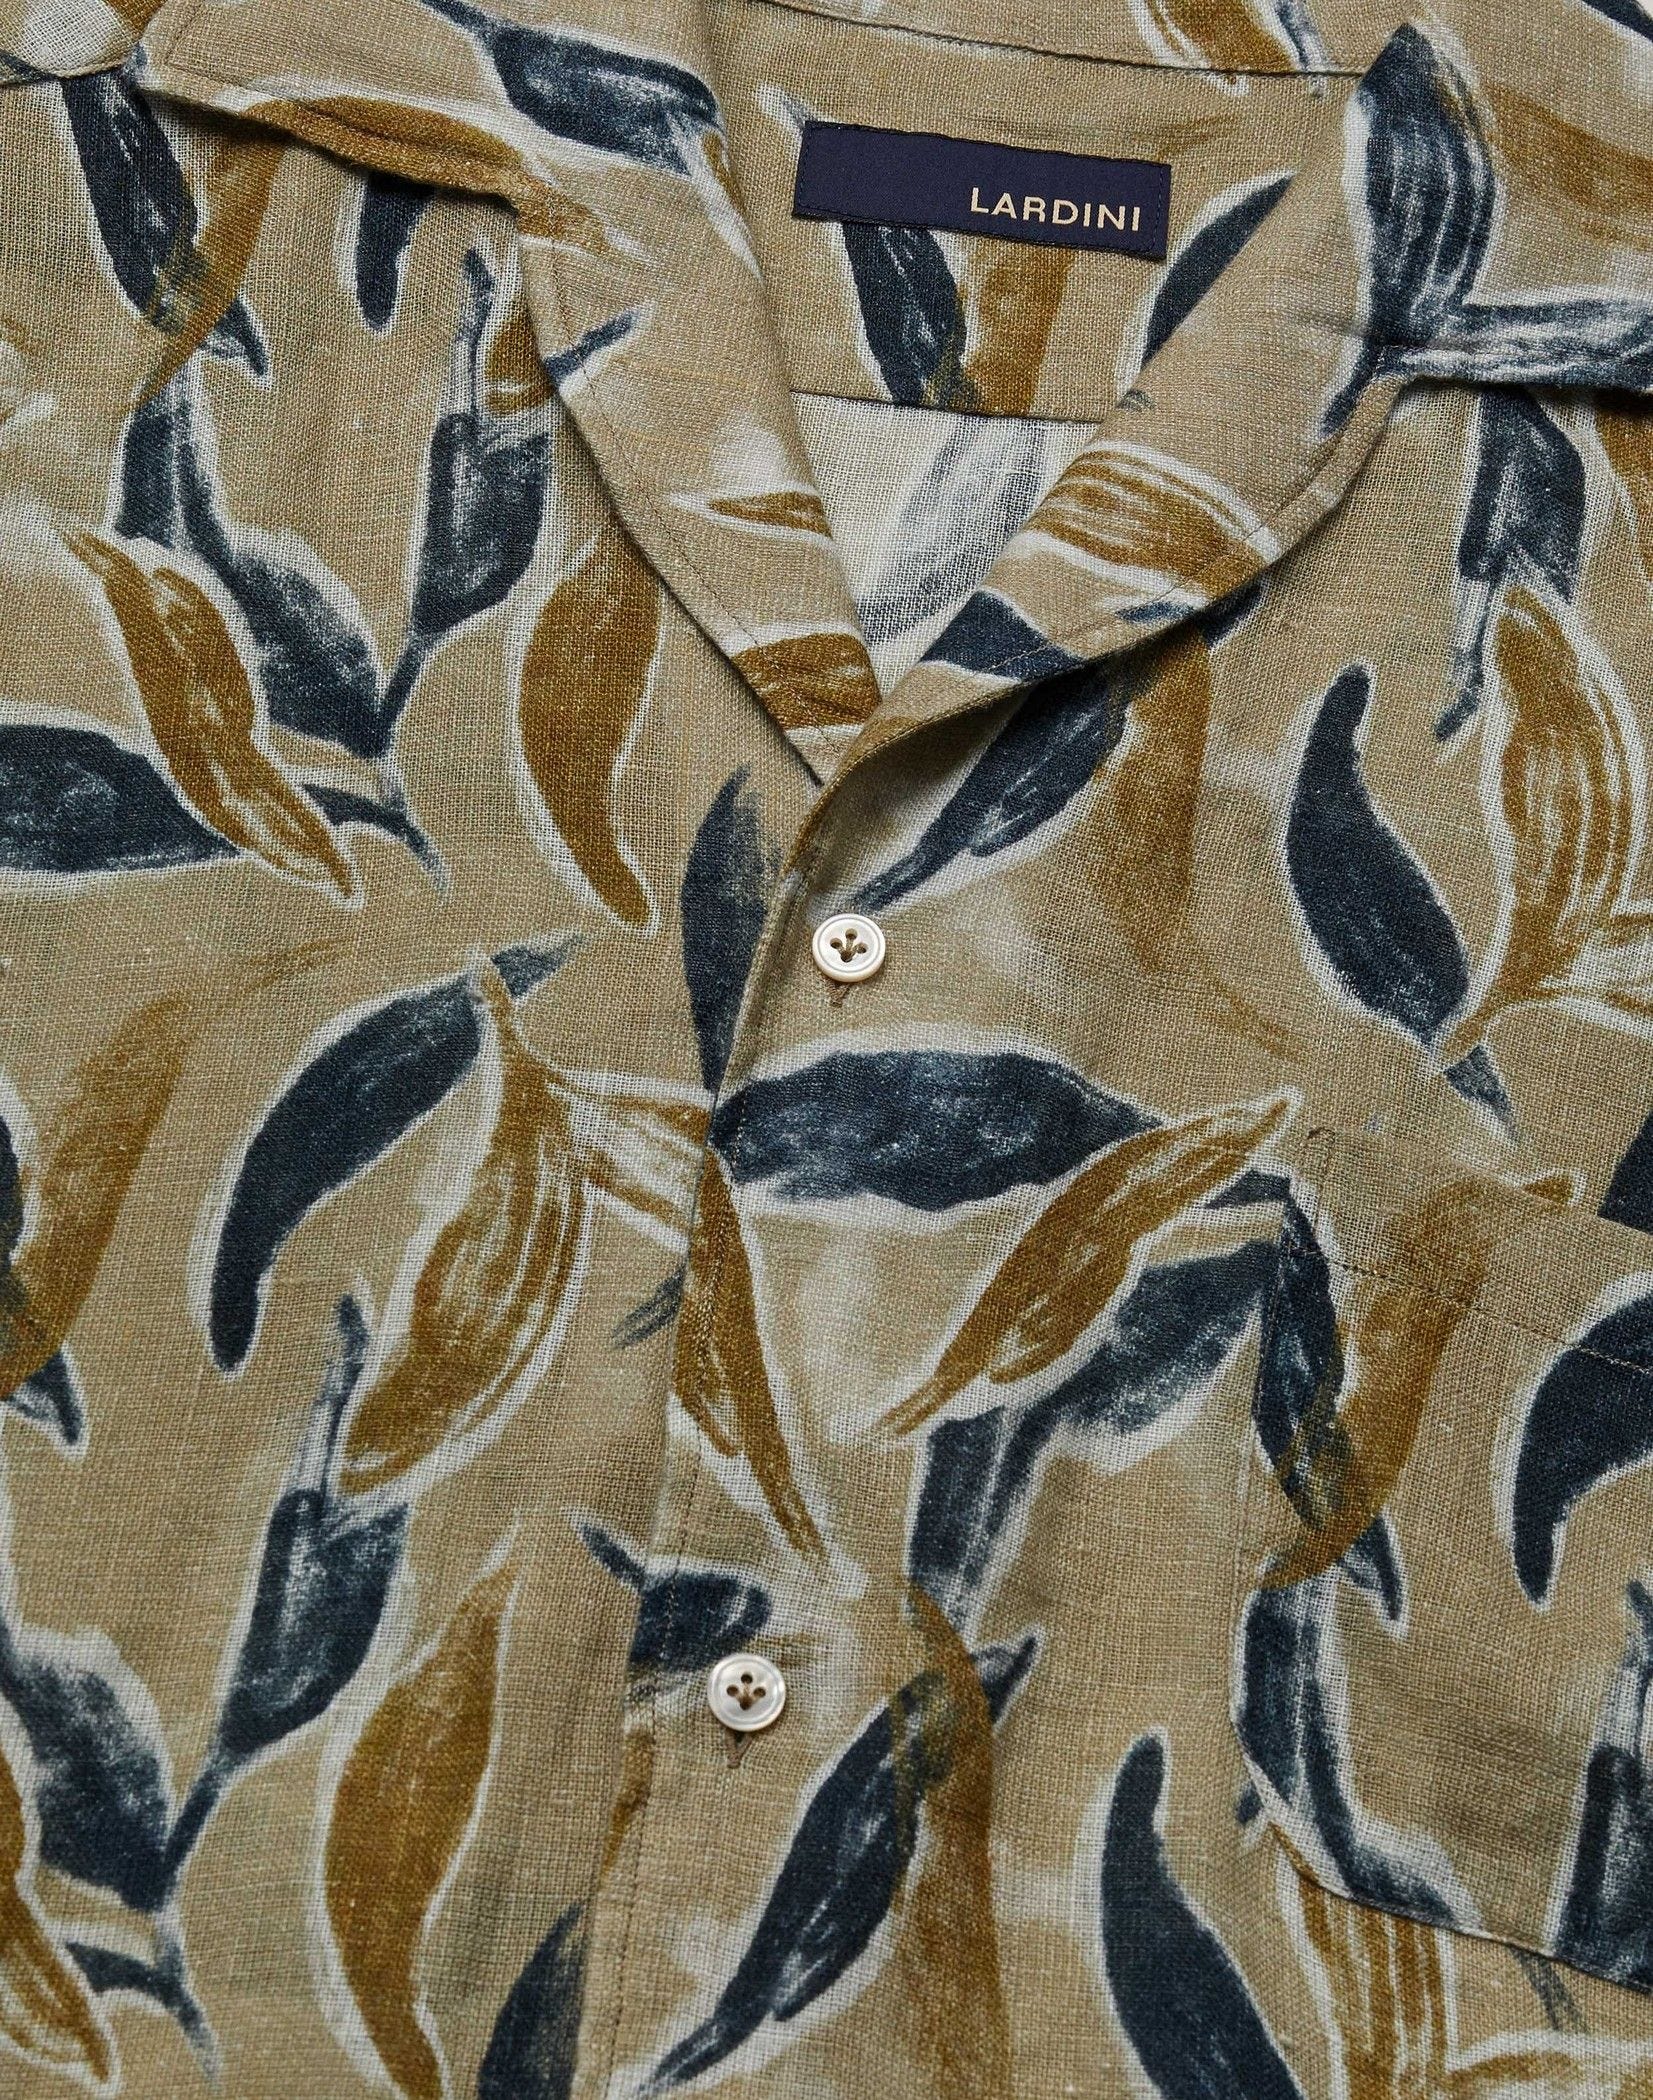 Beige printed linen research shirt